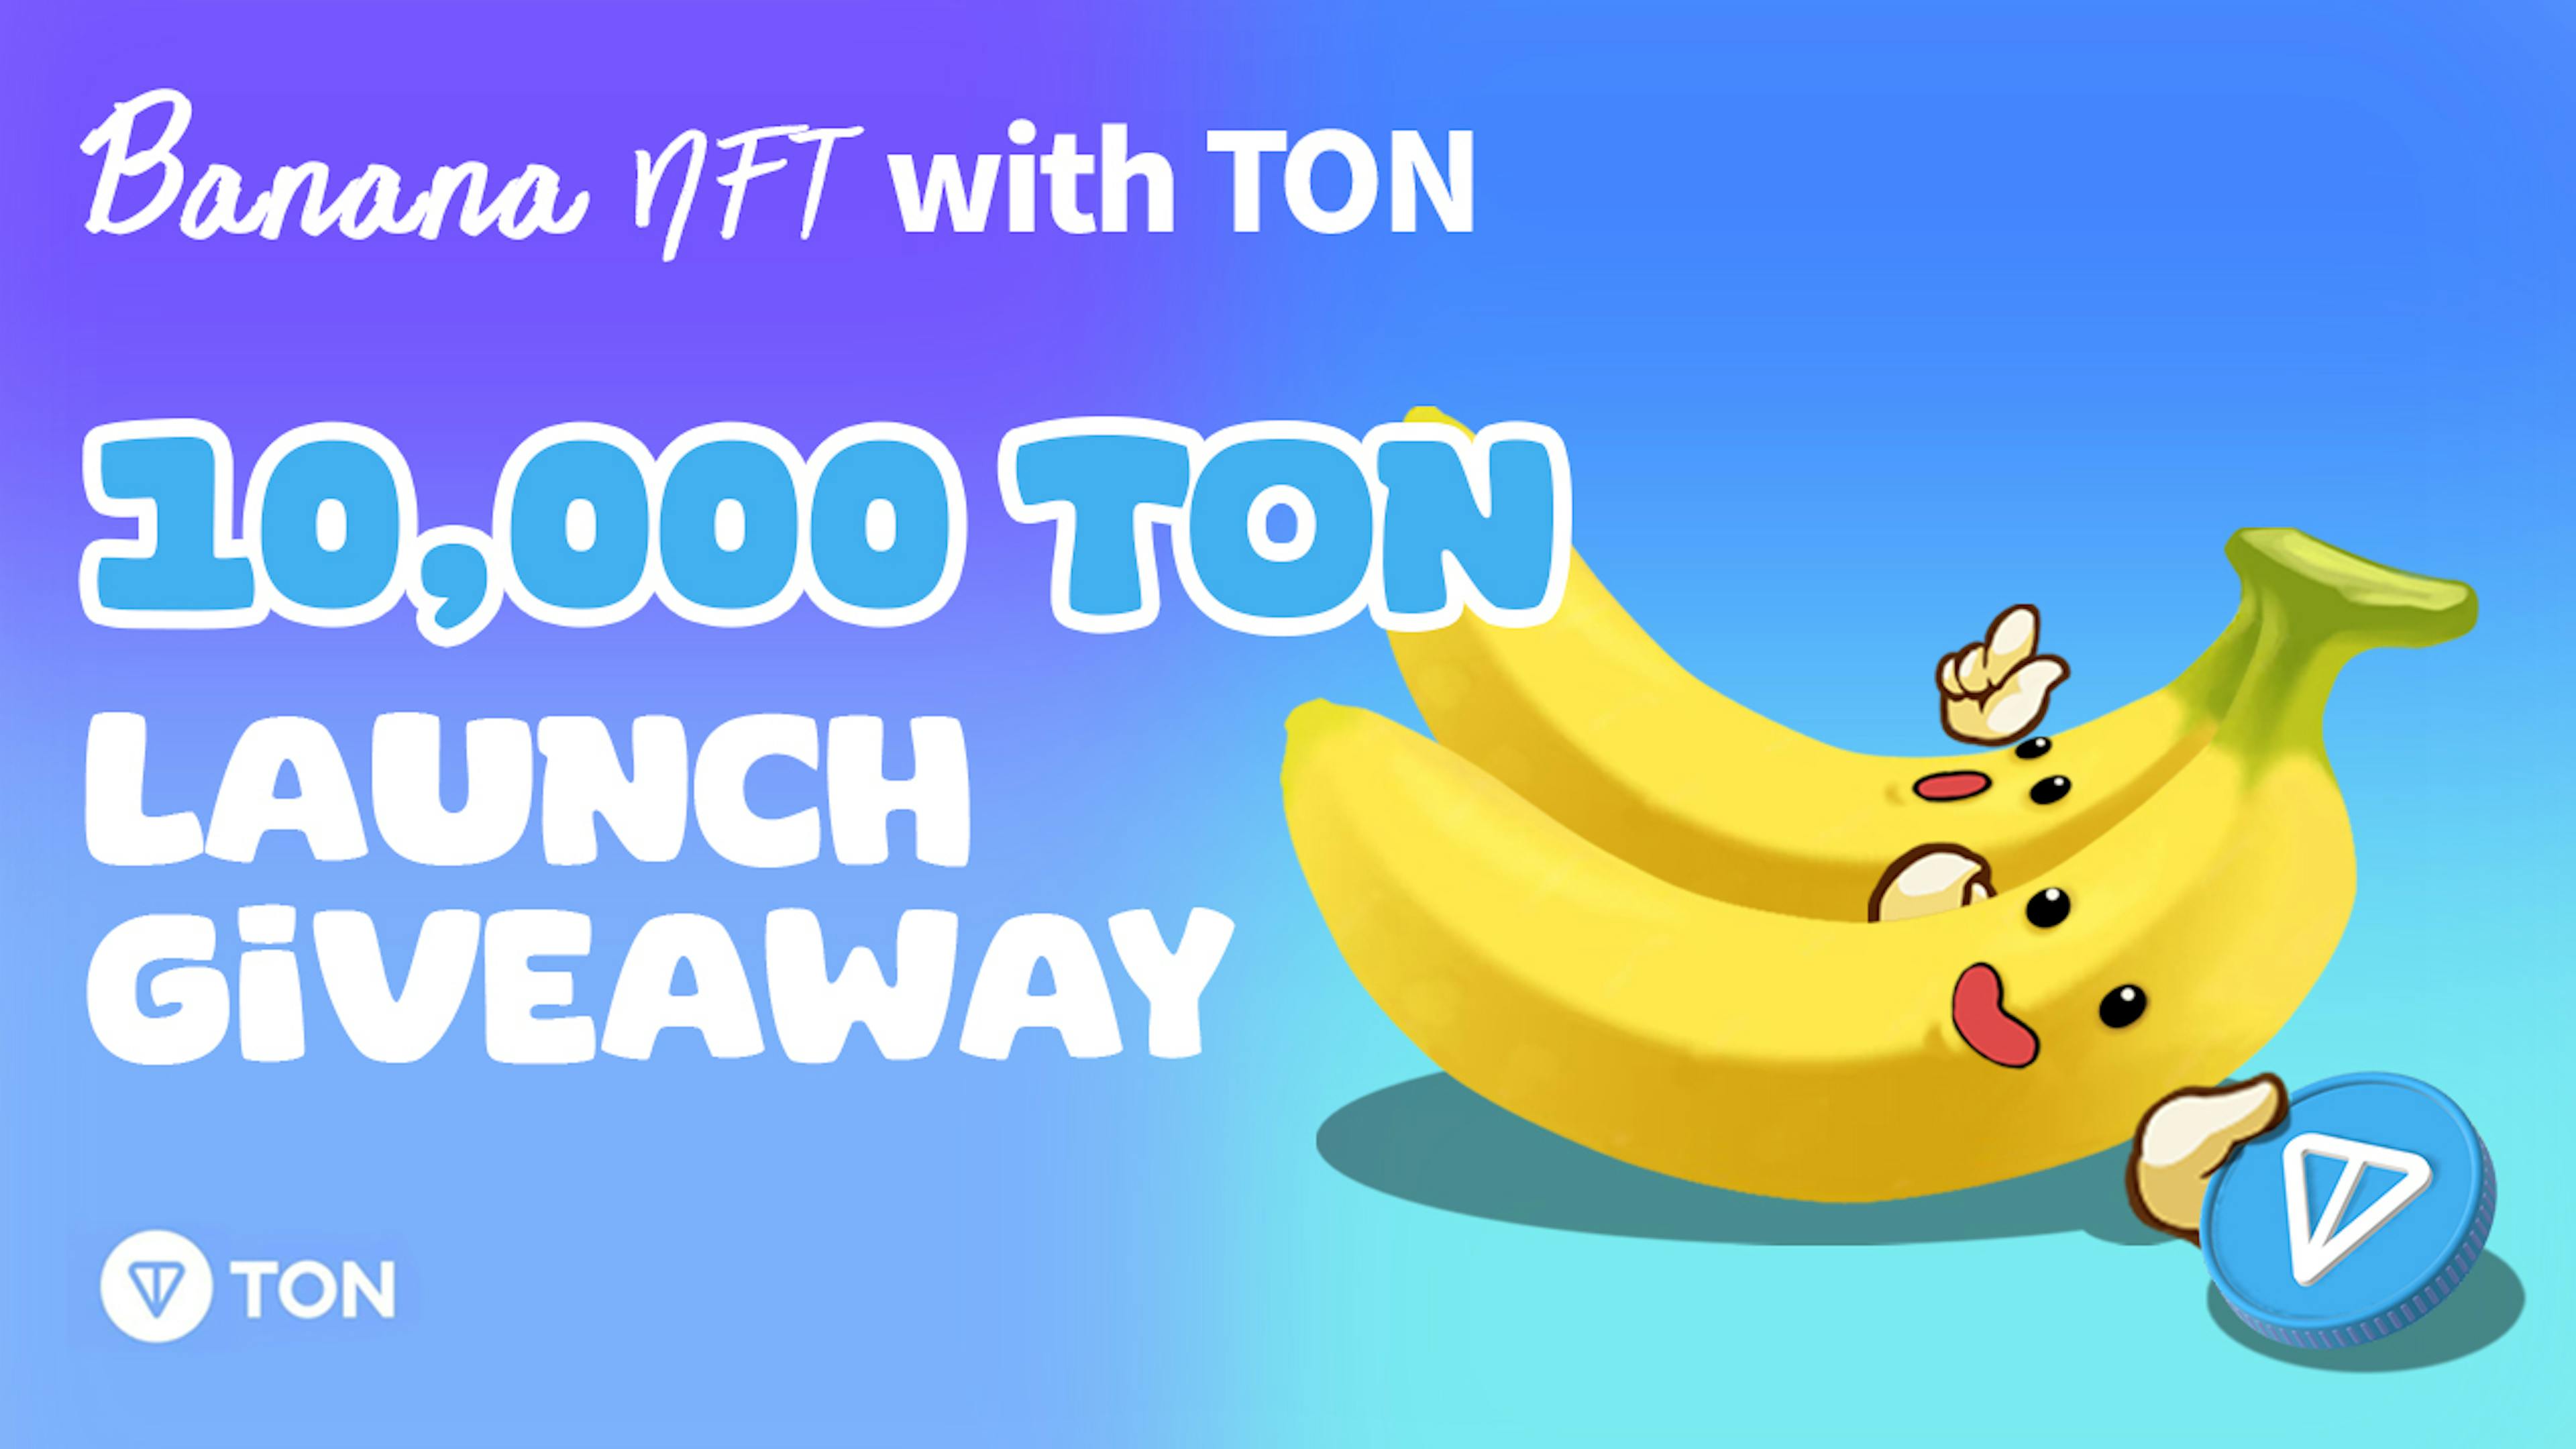 featured image - Banana NFT é lançado no Telegram com evento de sorteio de 10.000 $ TON